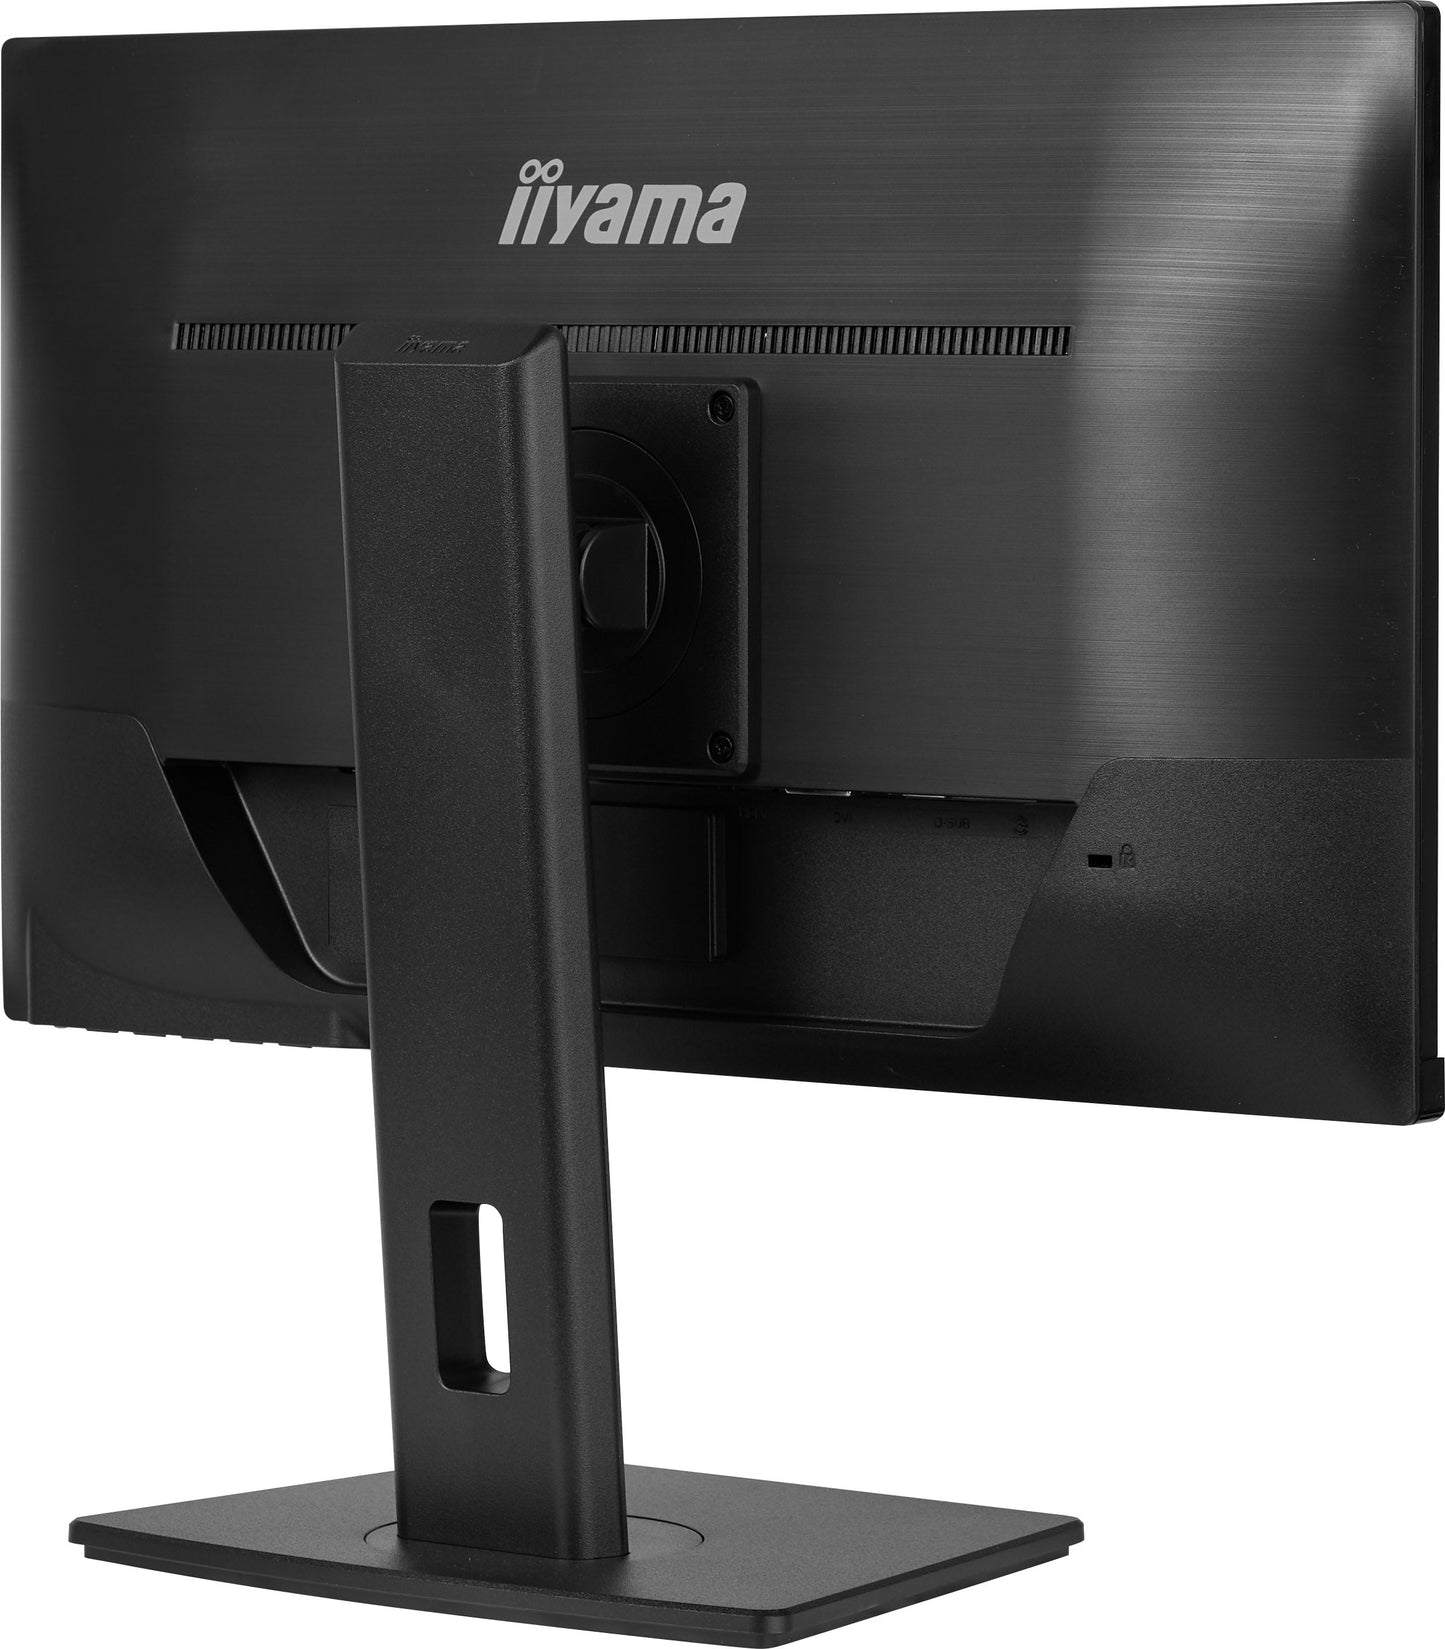 iiyama ProLite XUB2390HS-B5 23" IPS Display